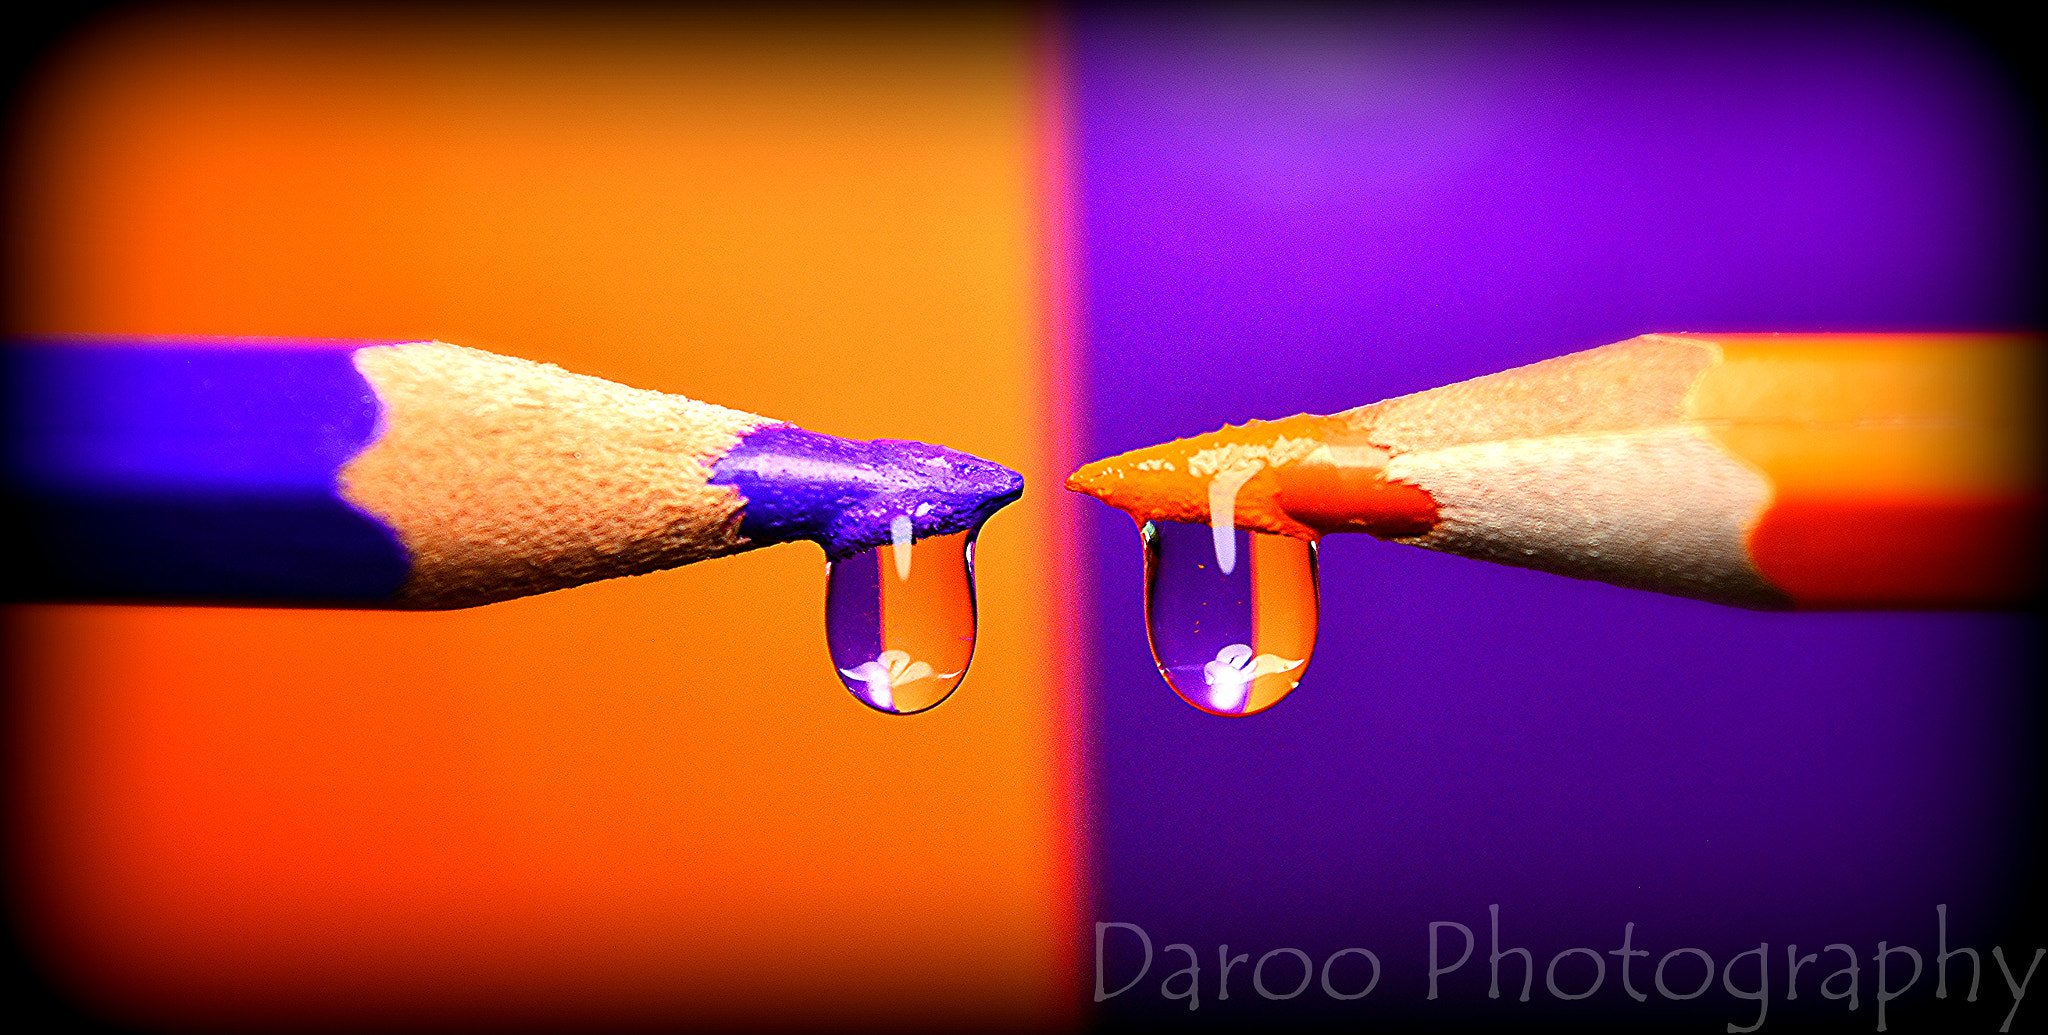 Nikon D5200 + AF Zoom-Nikkor 35-135mm f/3.5-4.5 N sample photo. Naranja y violeta - orange and violet photography